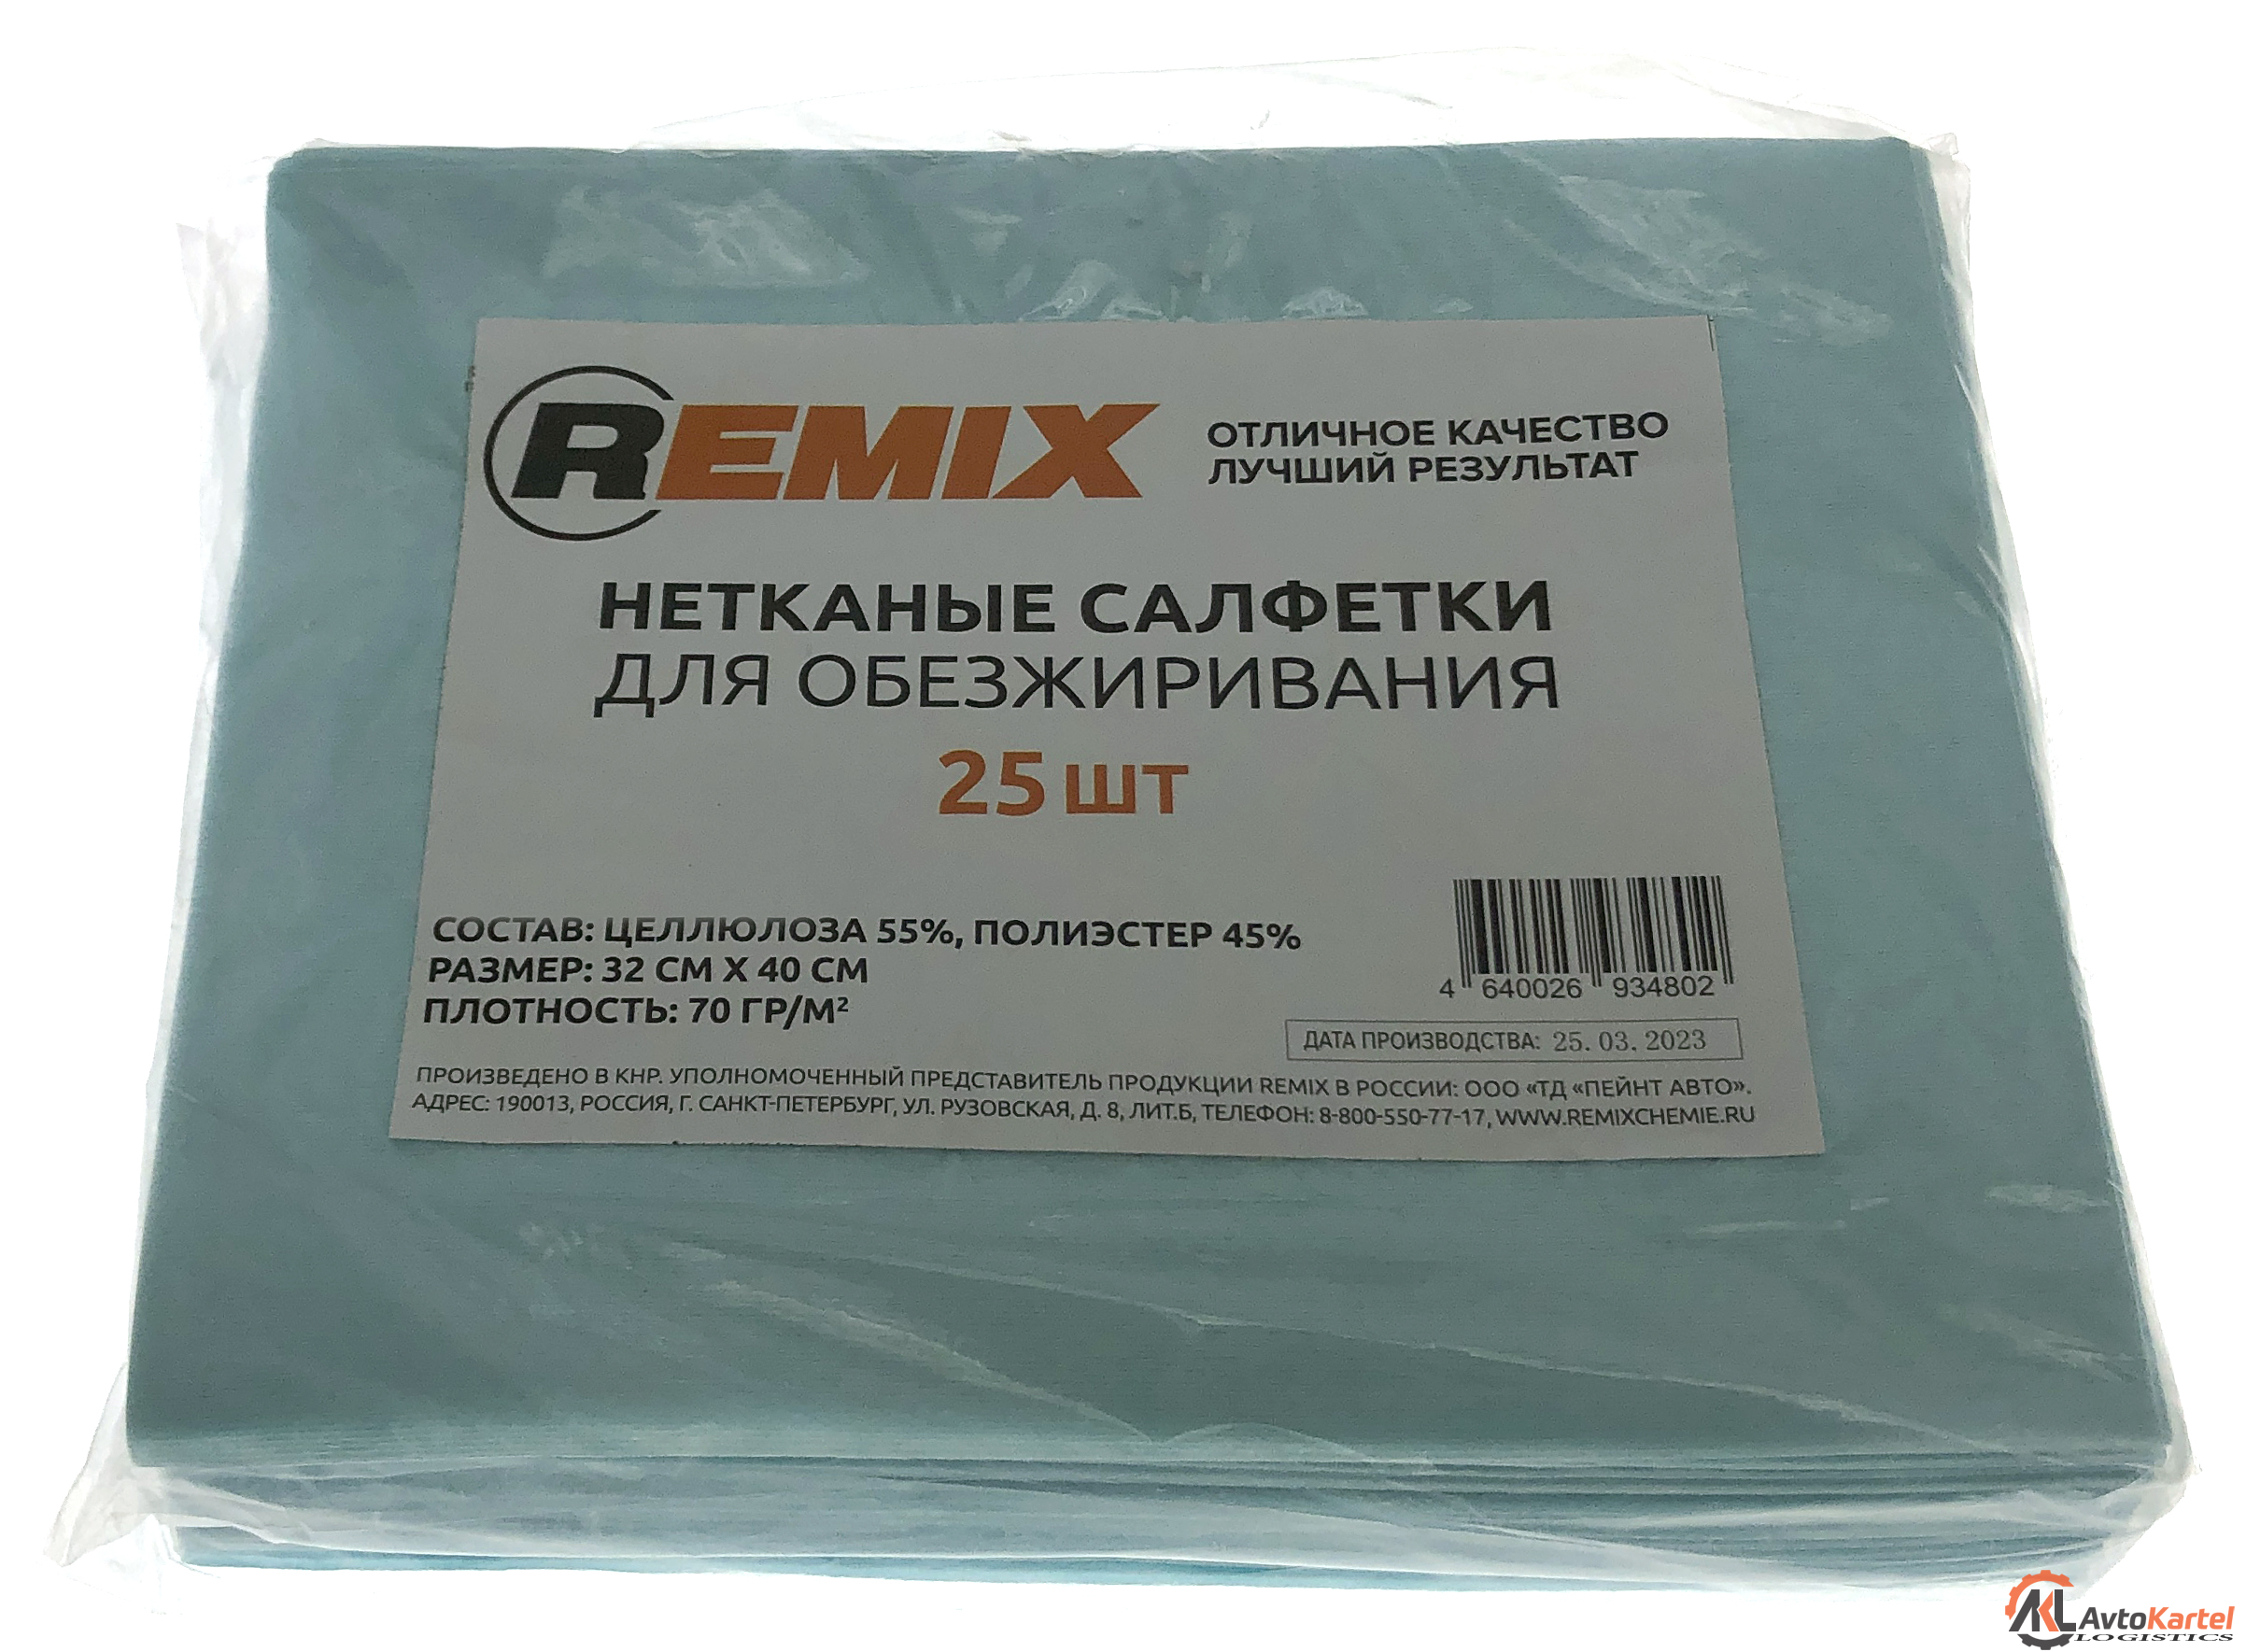 Нетканые салфетки для обезжиривания REMIX синие 25 штук